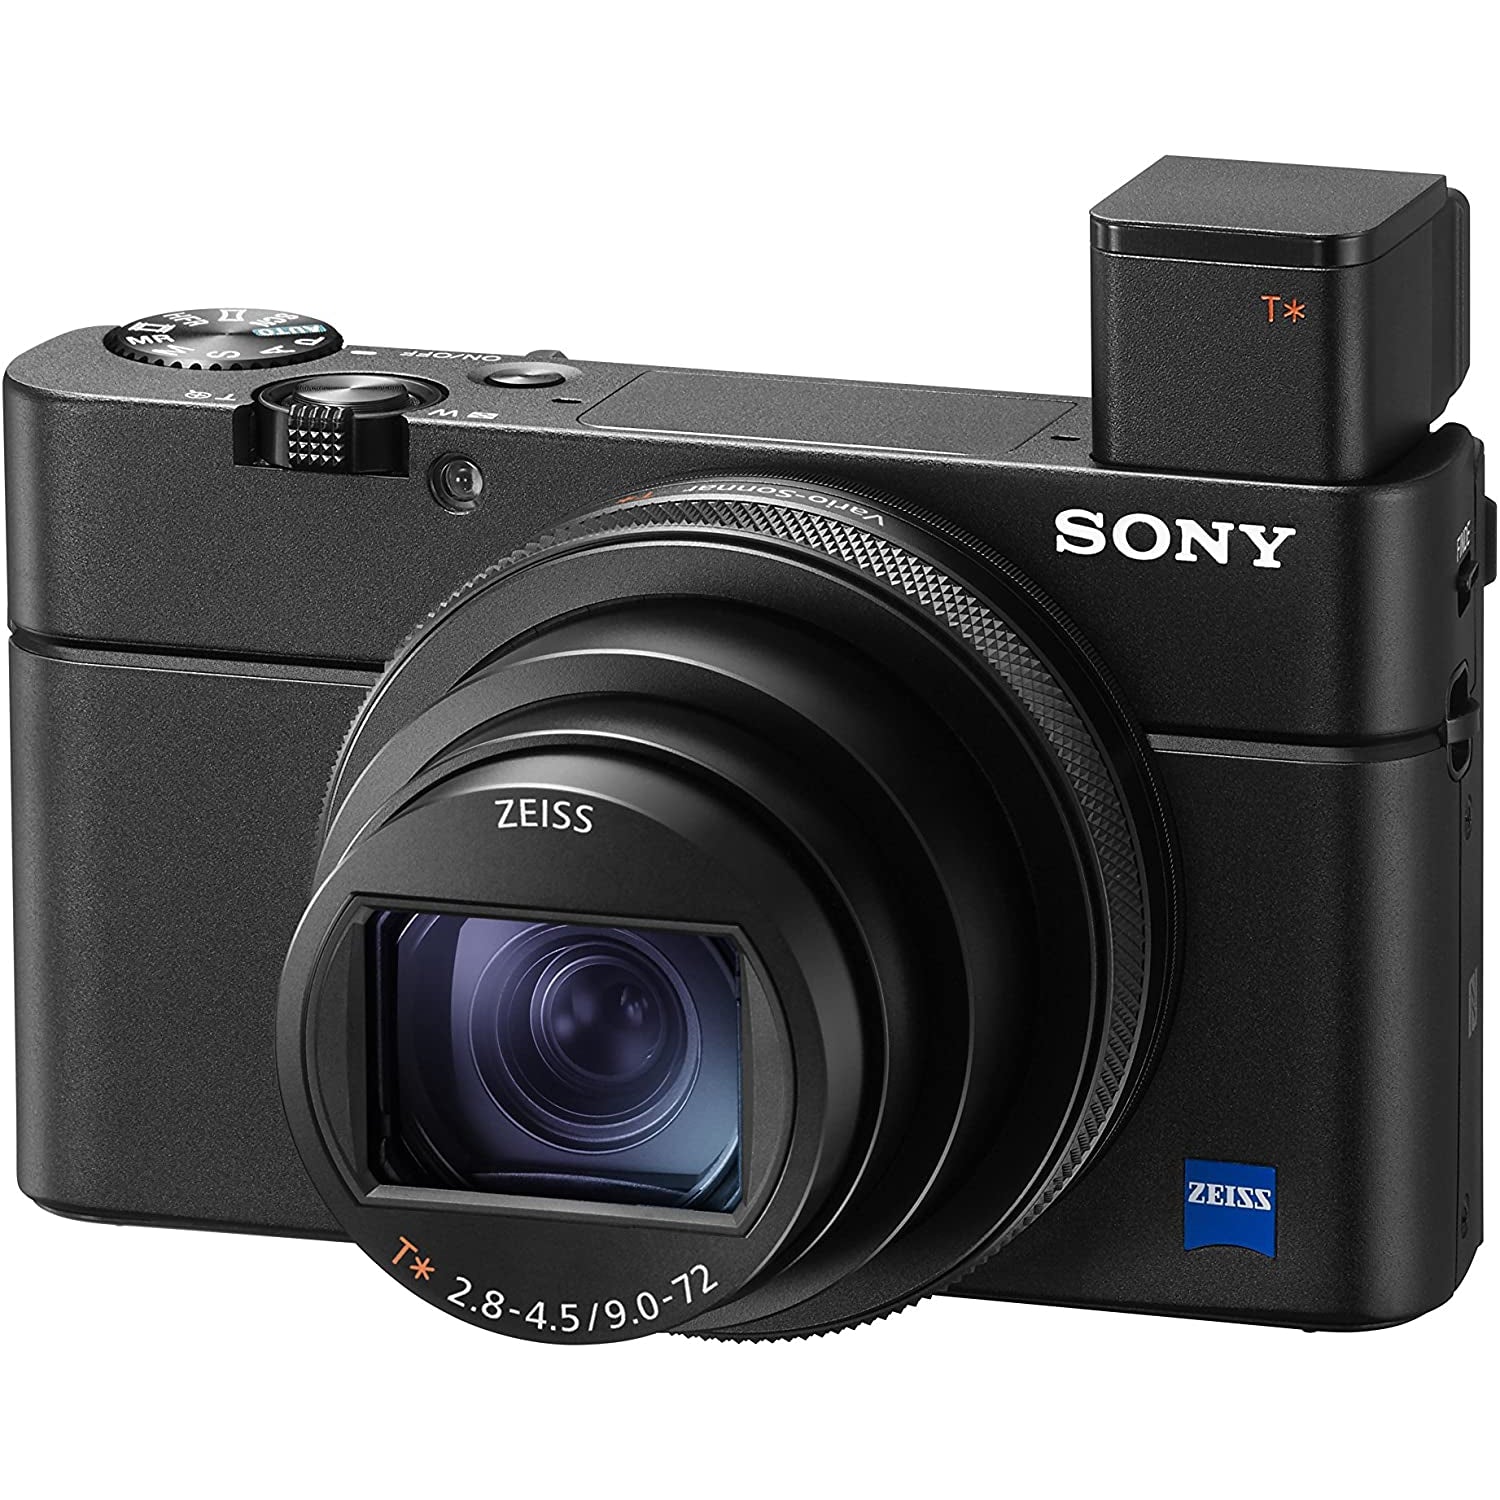 Sony RX100 VI Advanced Premium Compact Camera